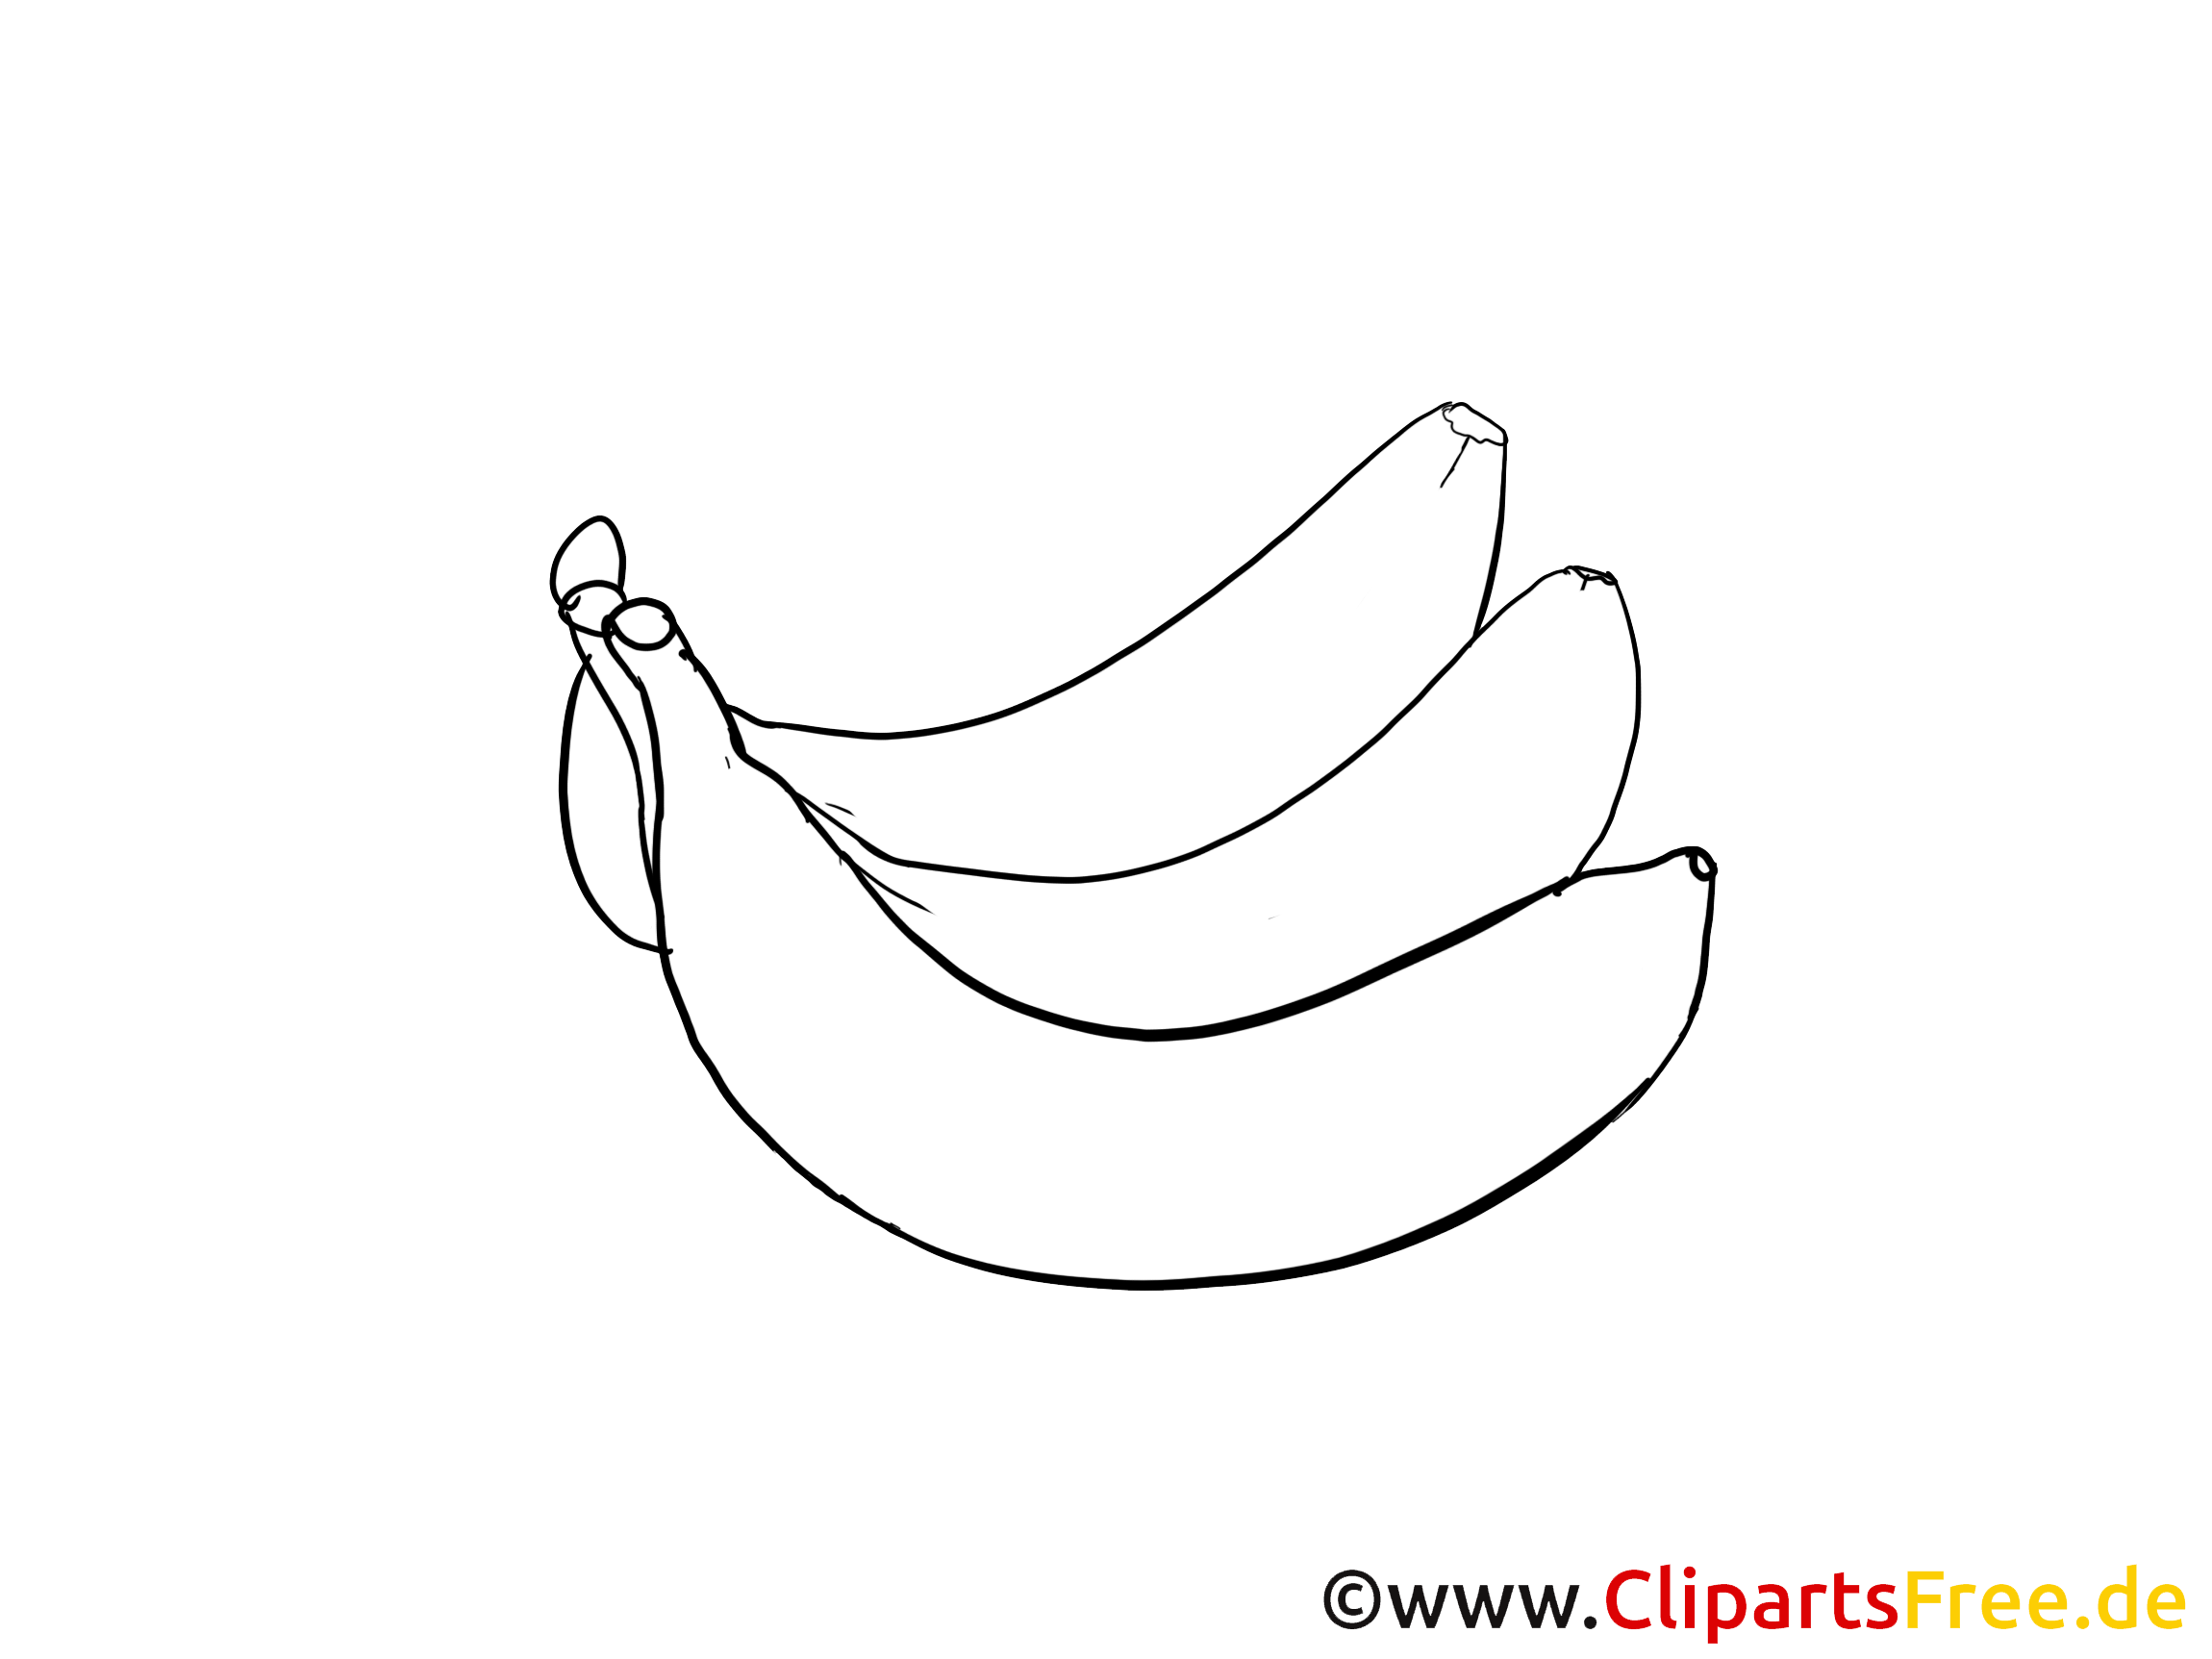 Coloriage bananes images - Fruits clip art gratuit